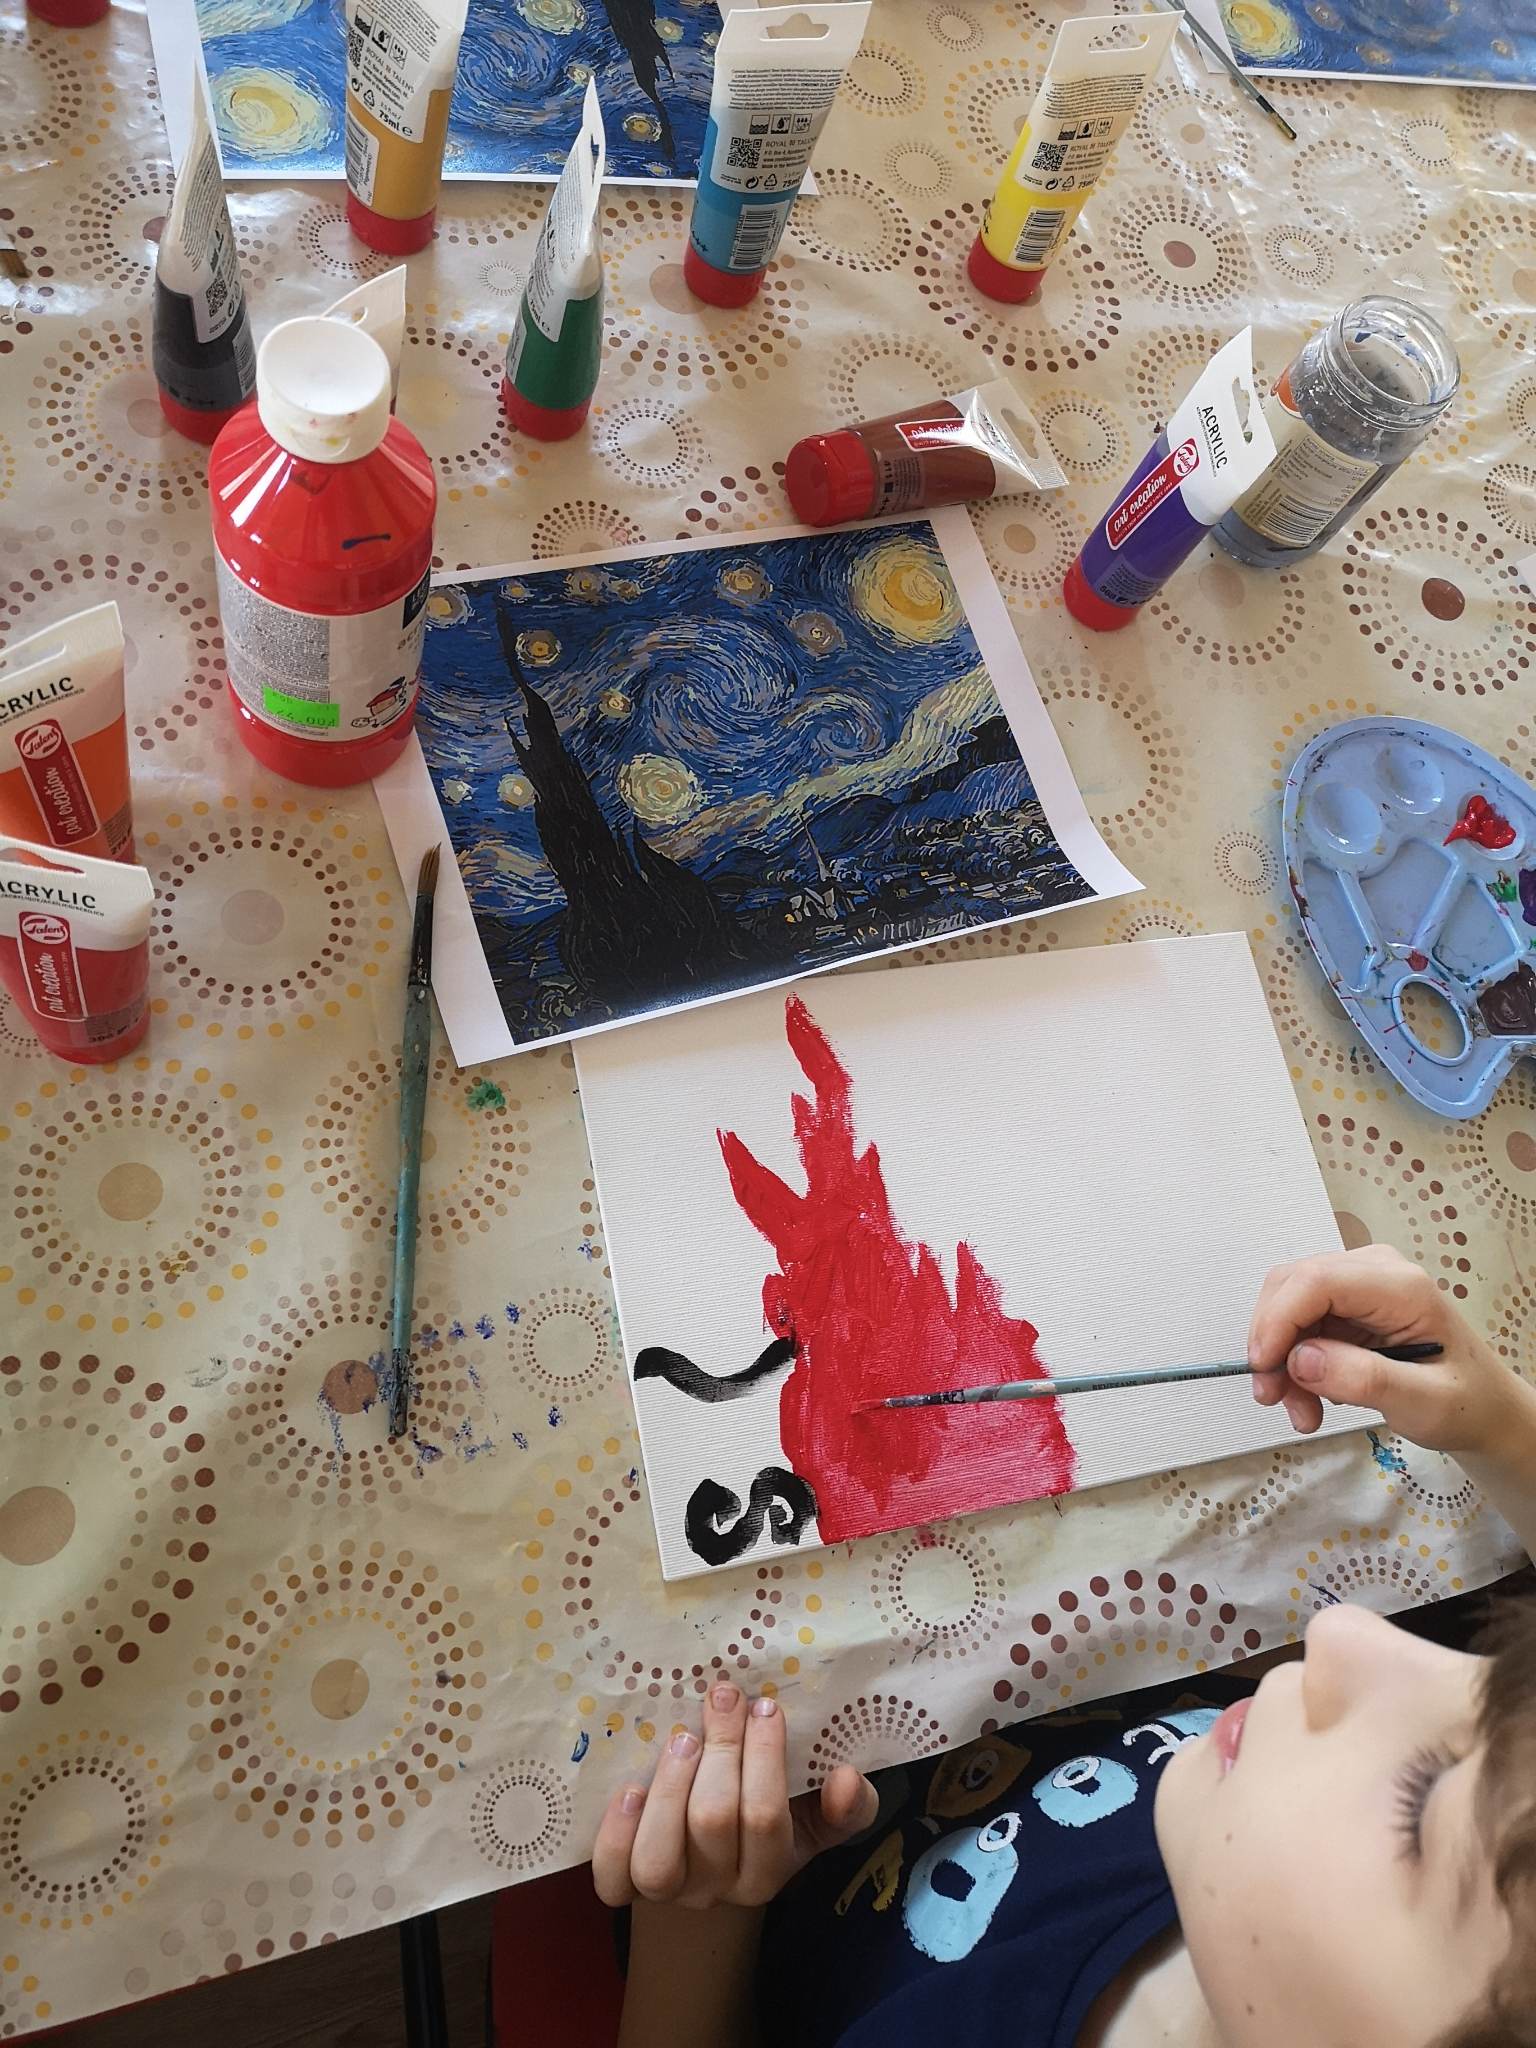 Zdjęcie przedstawia pracę malarską, która odmalowywana ze wzoru obrazu van Goga jest malowana przez nieujętą w kadrze zdjęcia osobę. Obraz van Goga to czarna wieża na tle niebieskim z żółtymi okręgami na niebie, a praca odmalowywana to czerwony ogień w kształcie wieży van Goga z dwoma czarnymi pasami po lewej stronie płótna